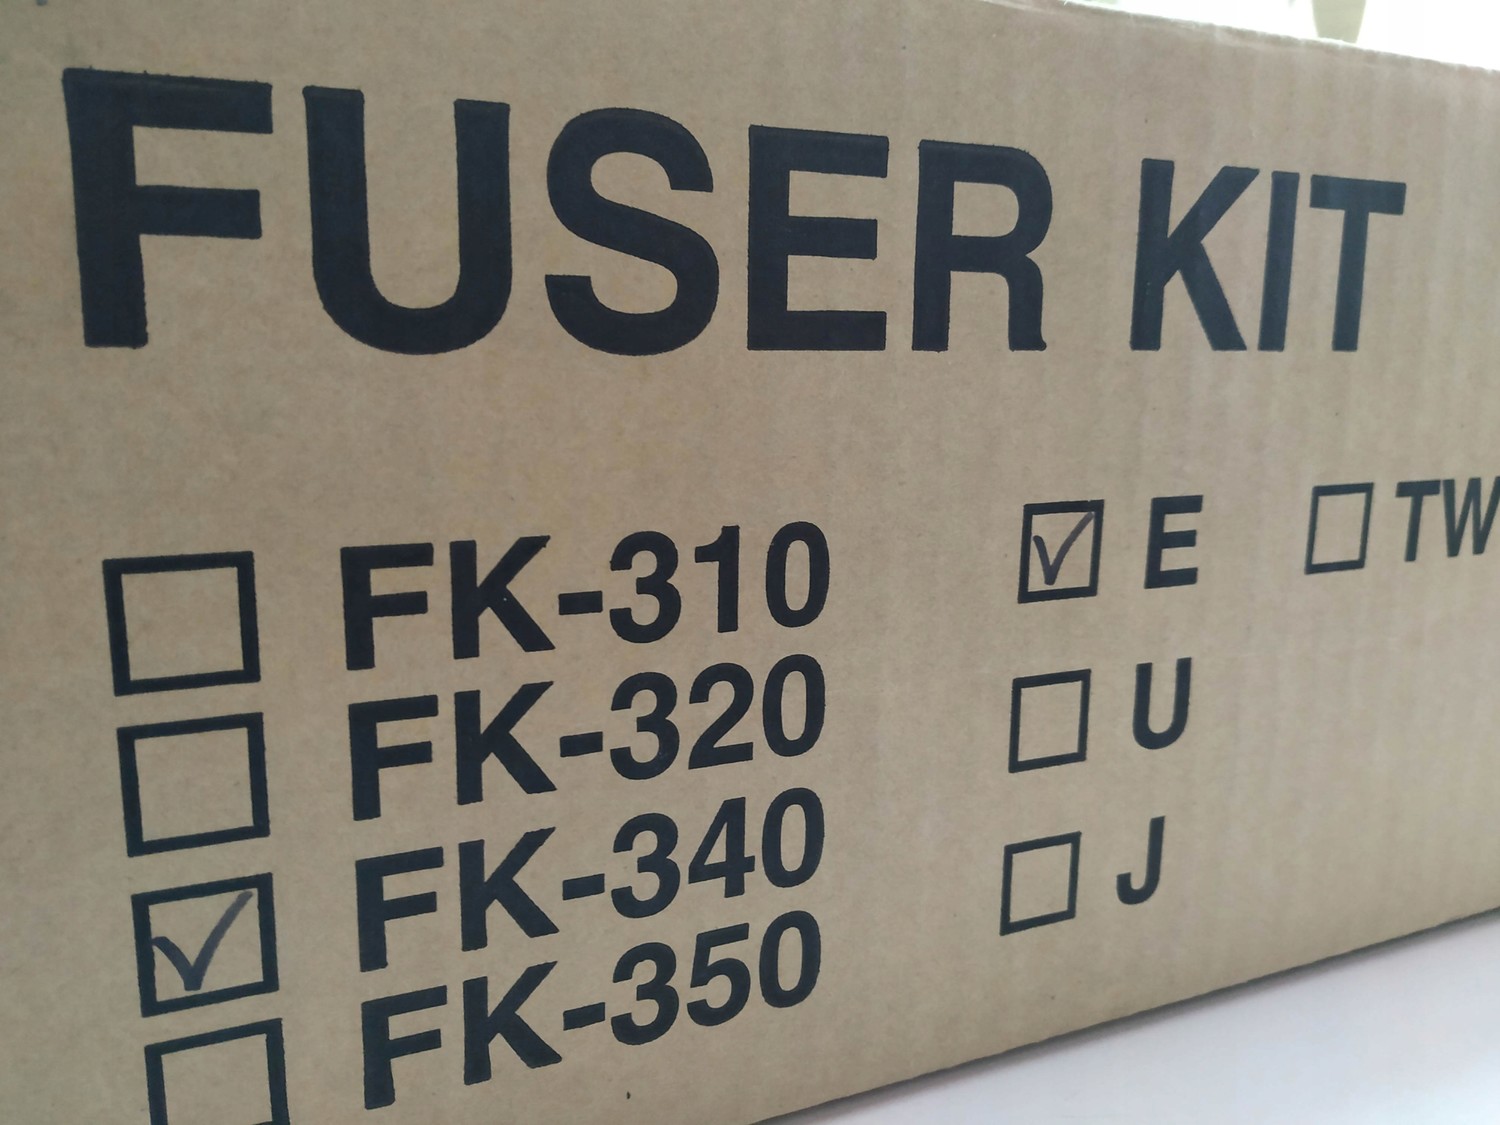 Kyocera Fuser Kit For FS-2020 FS2020 FK-340 FK340 Nová Akce